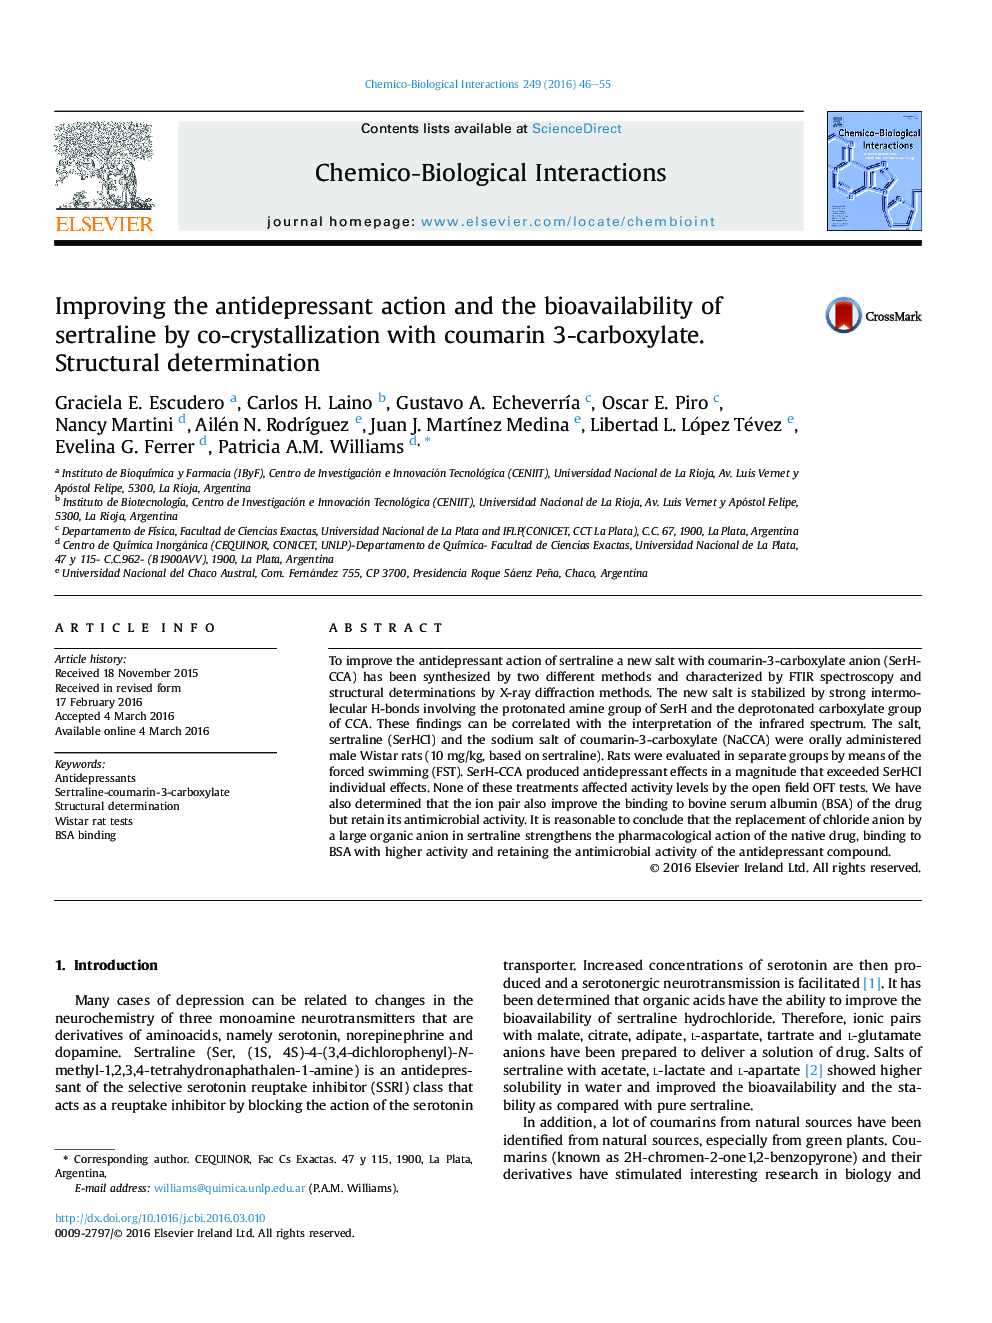 بهبود عملکرد ضد افسردگی و قابلیت ذخیره زایمان سرترالین توسط کریستالیزاسیون با کومارین 3-کربوکسیلات. تعیین ساختار 